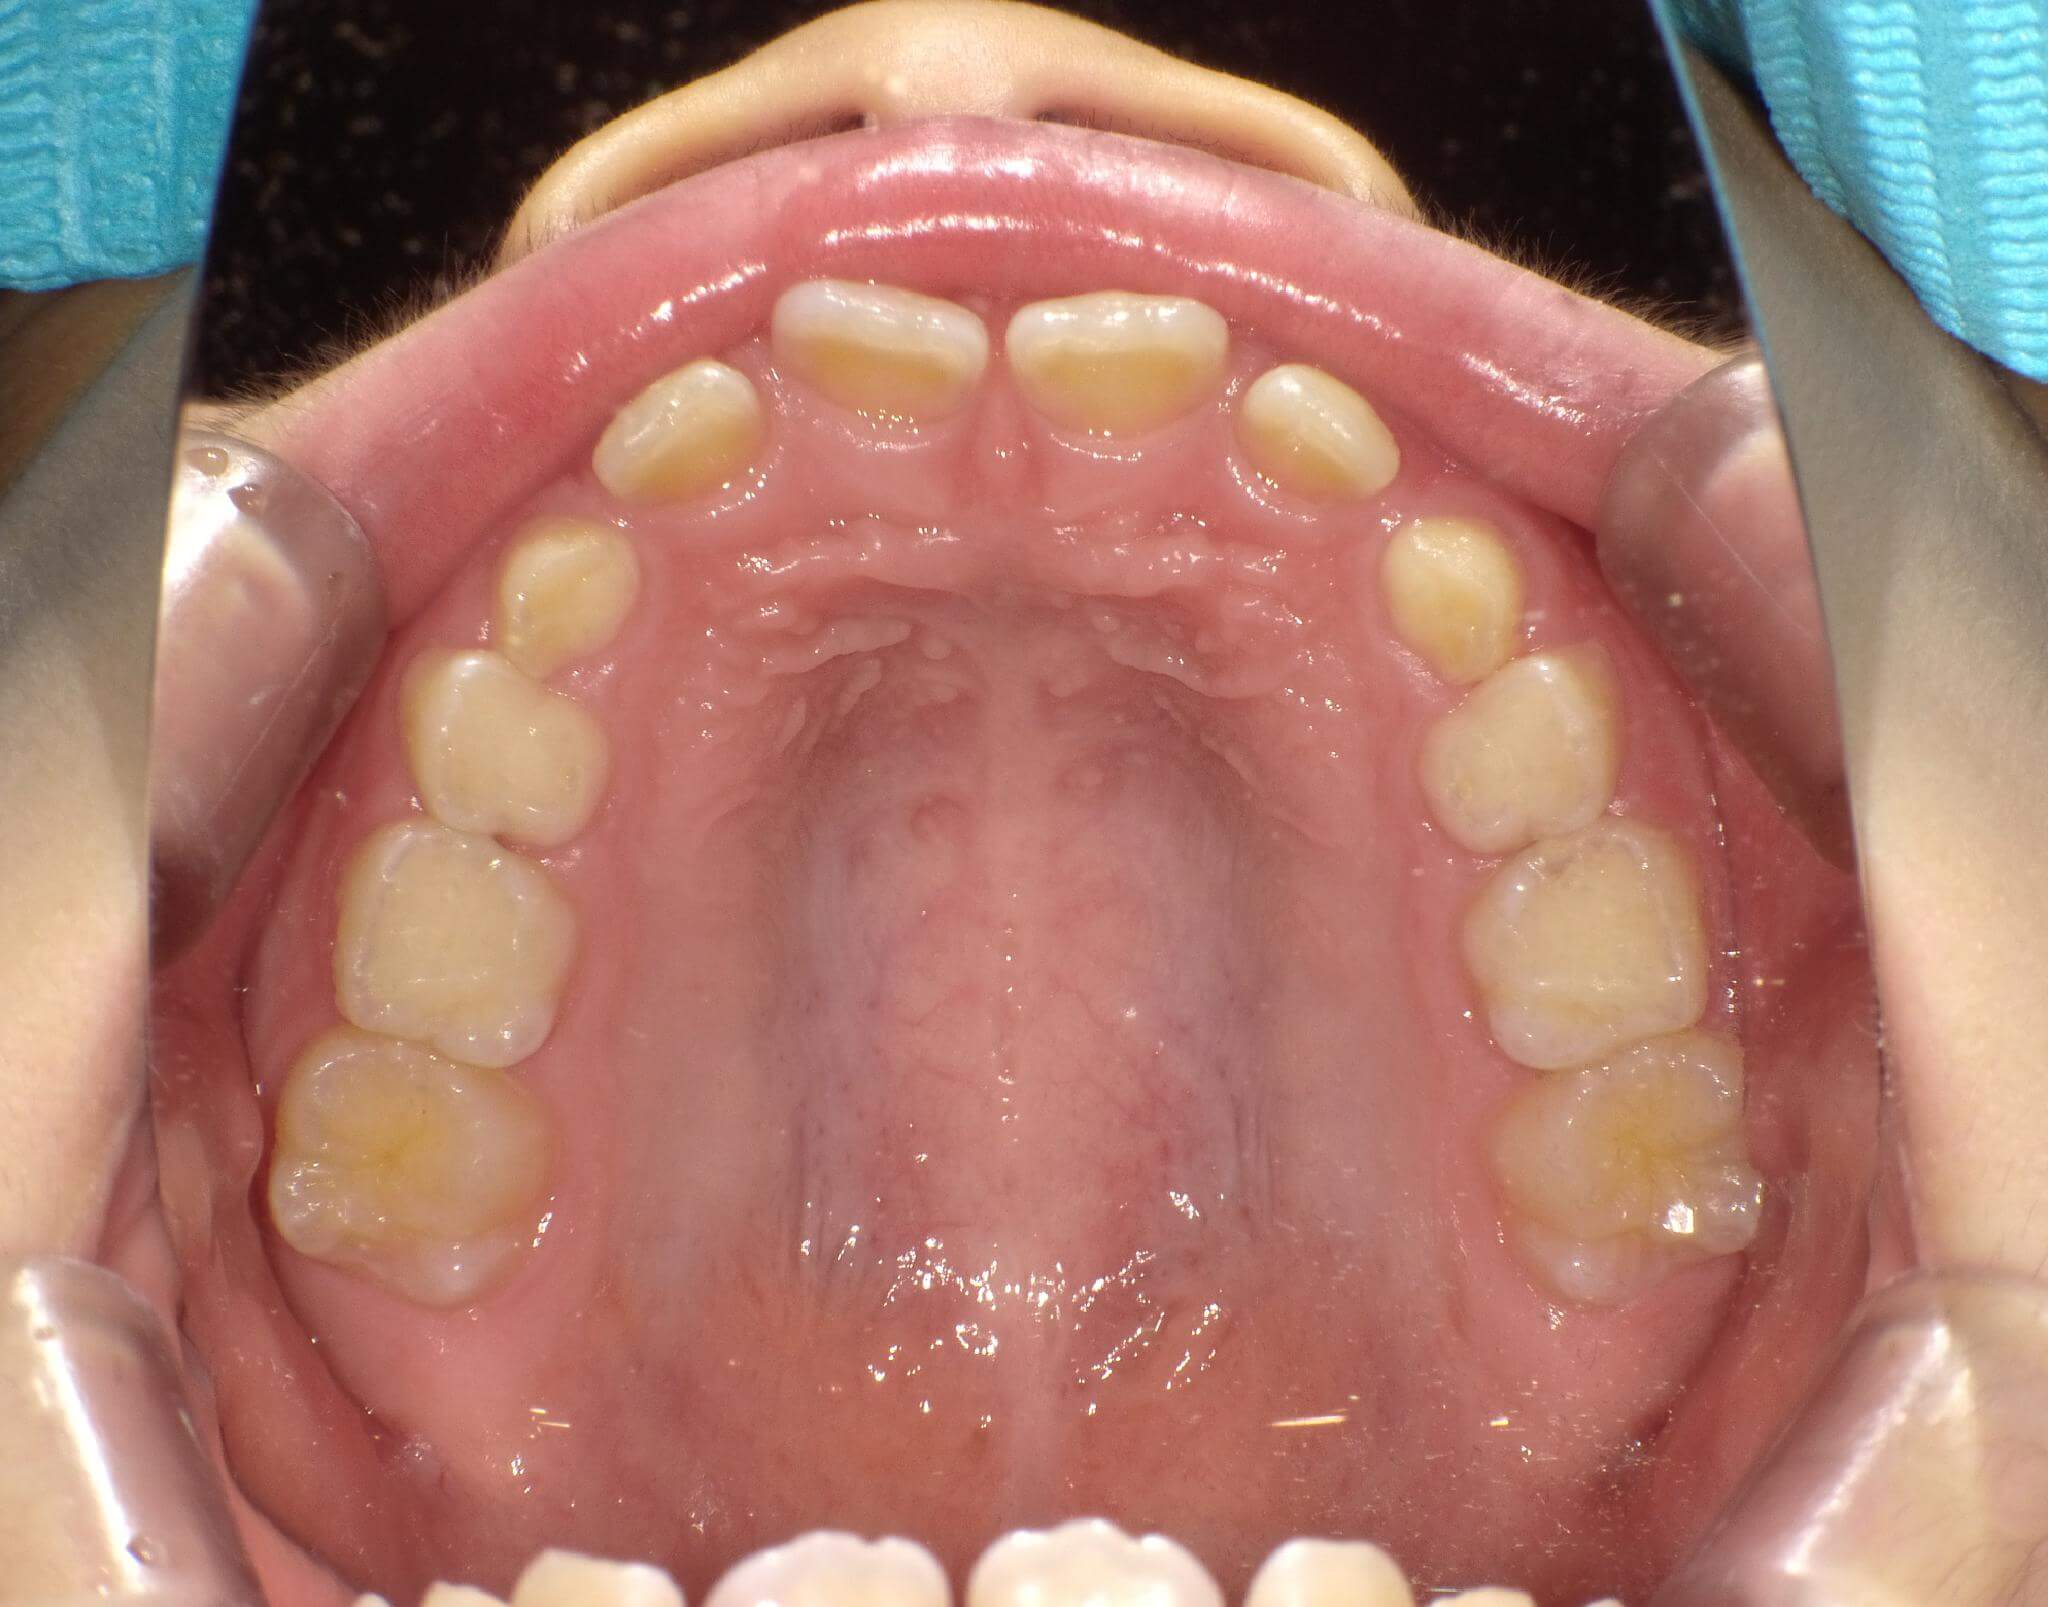 歯列の横幅は大きい。歯と歯の間にスペースがあり、前歯が斜めに生えている